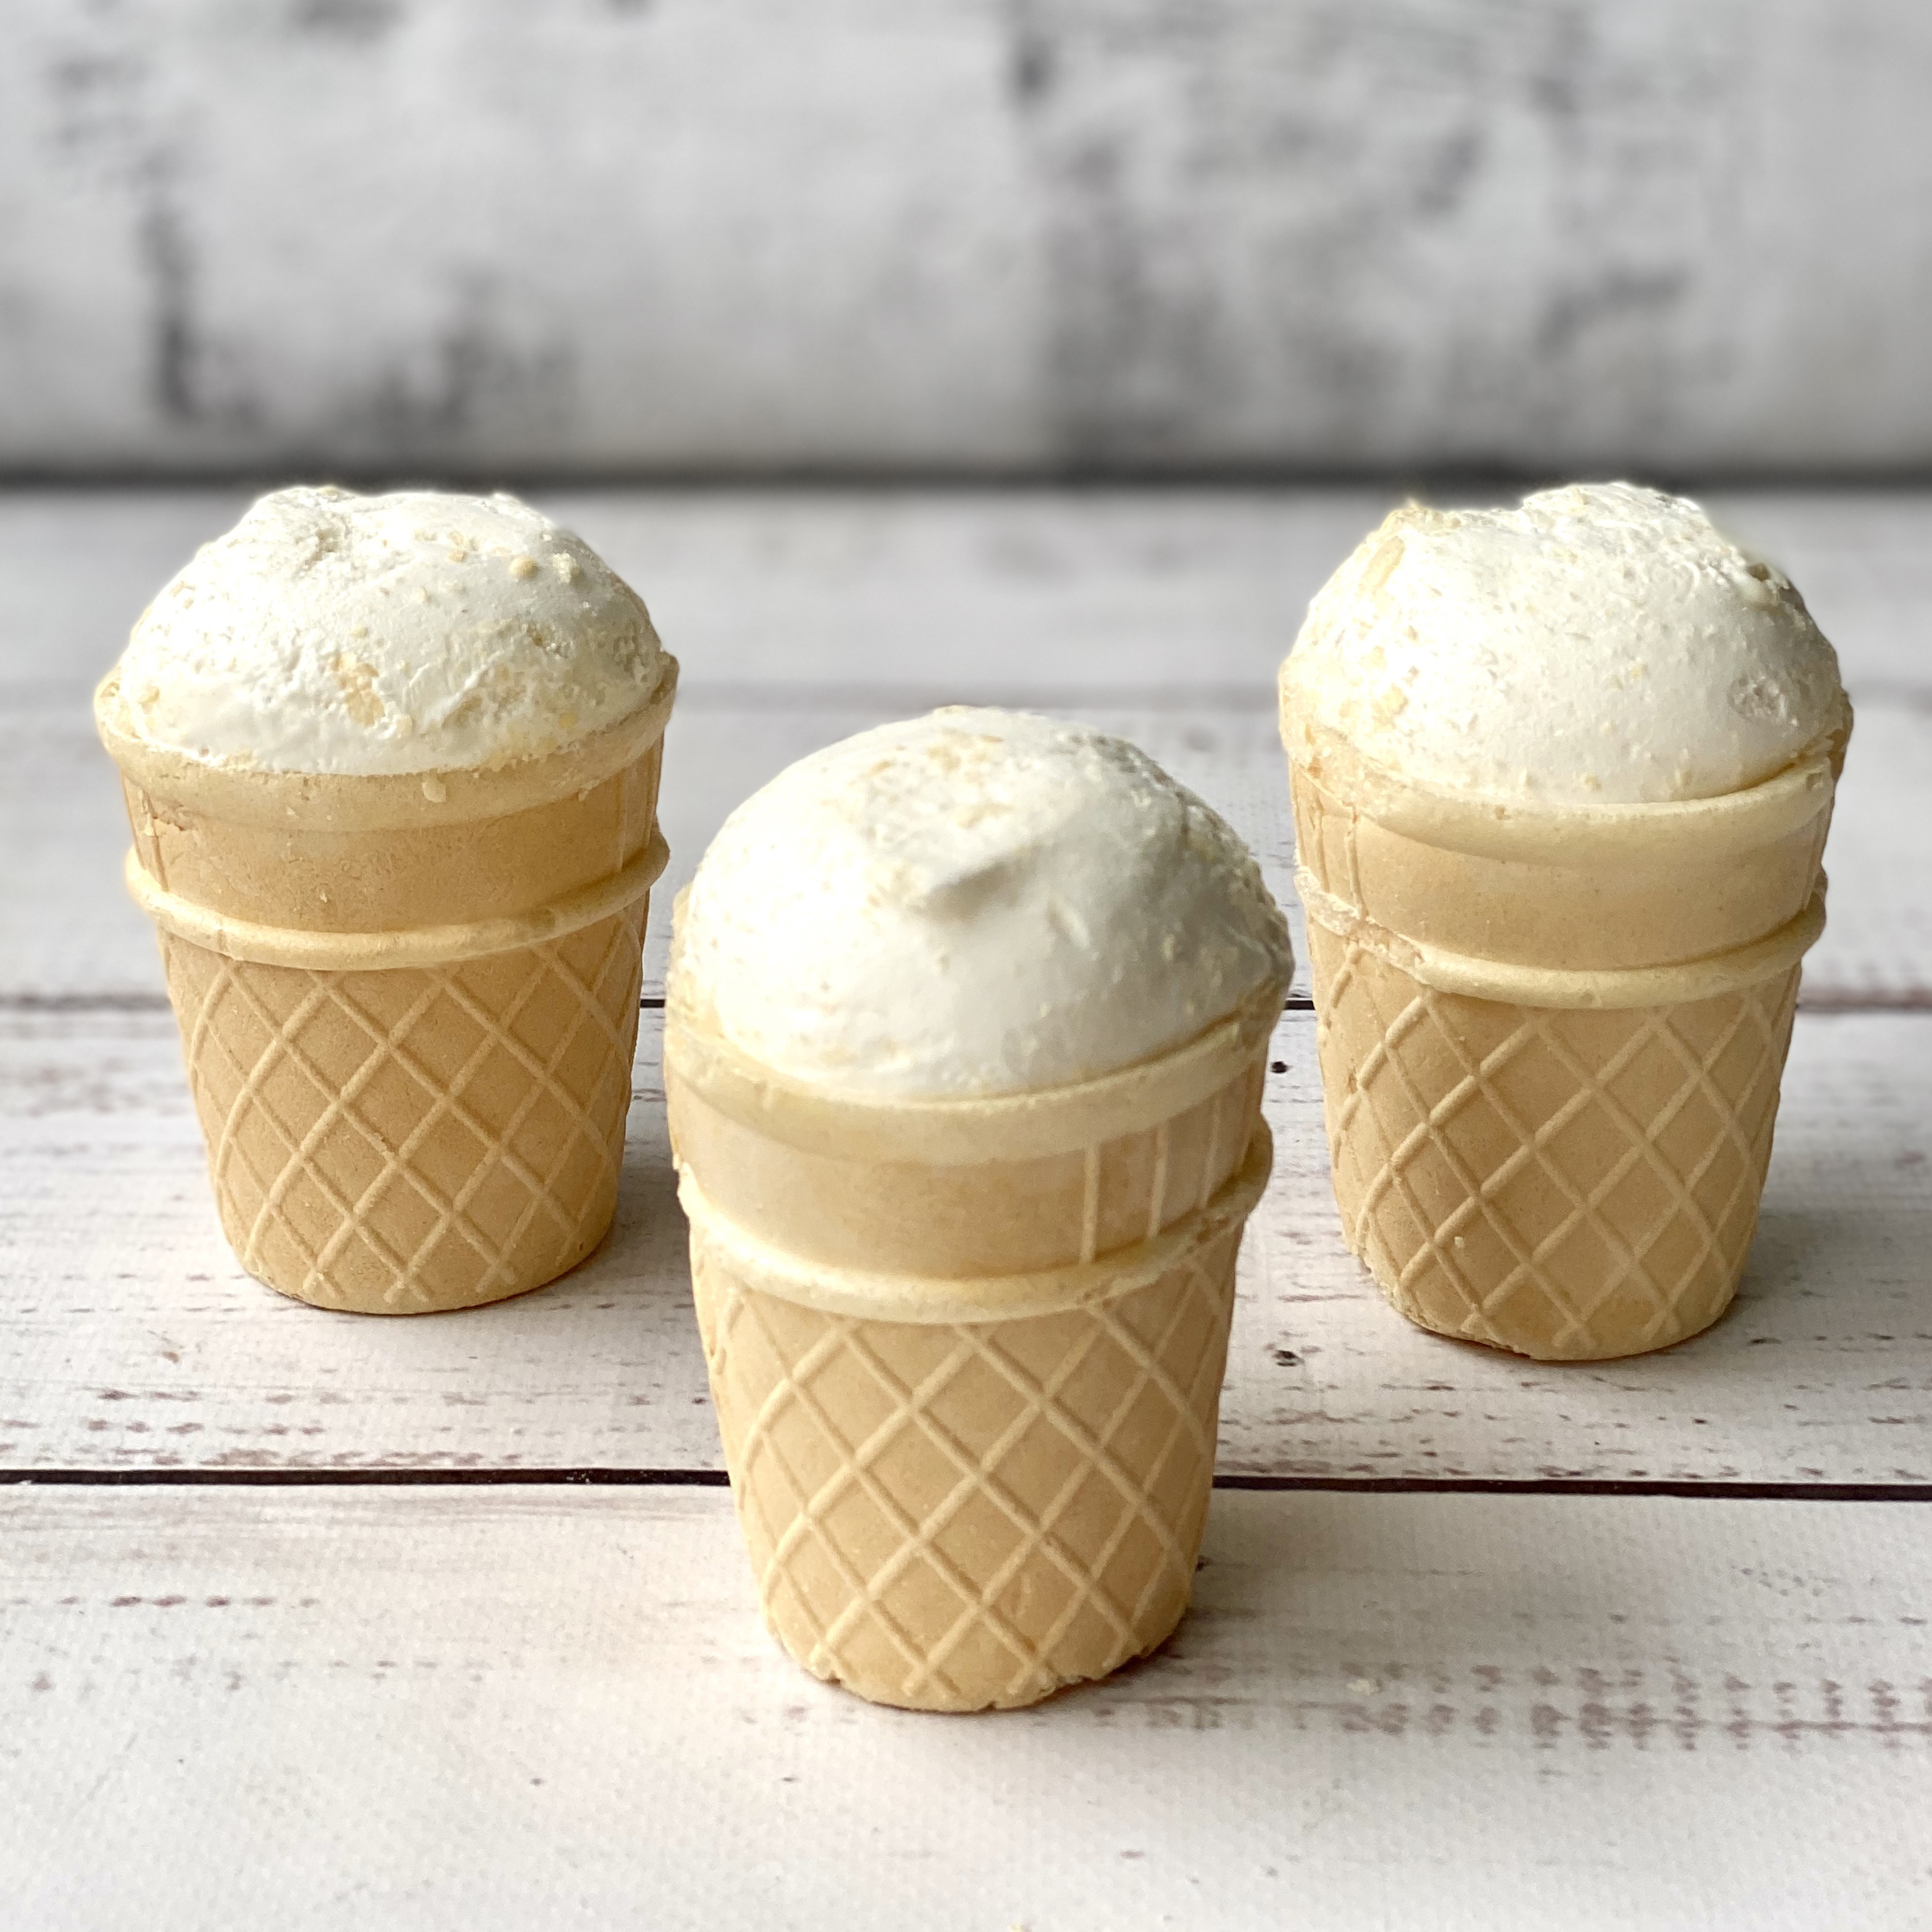 Мороженое в вафельном стаканчике Дело в сливках с кукурузными палочками изображение 2